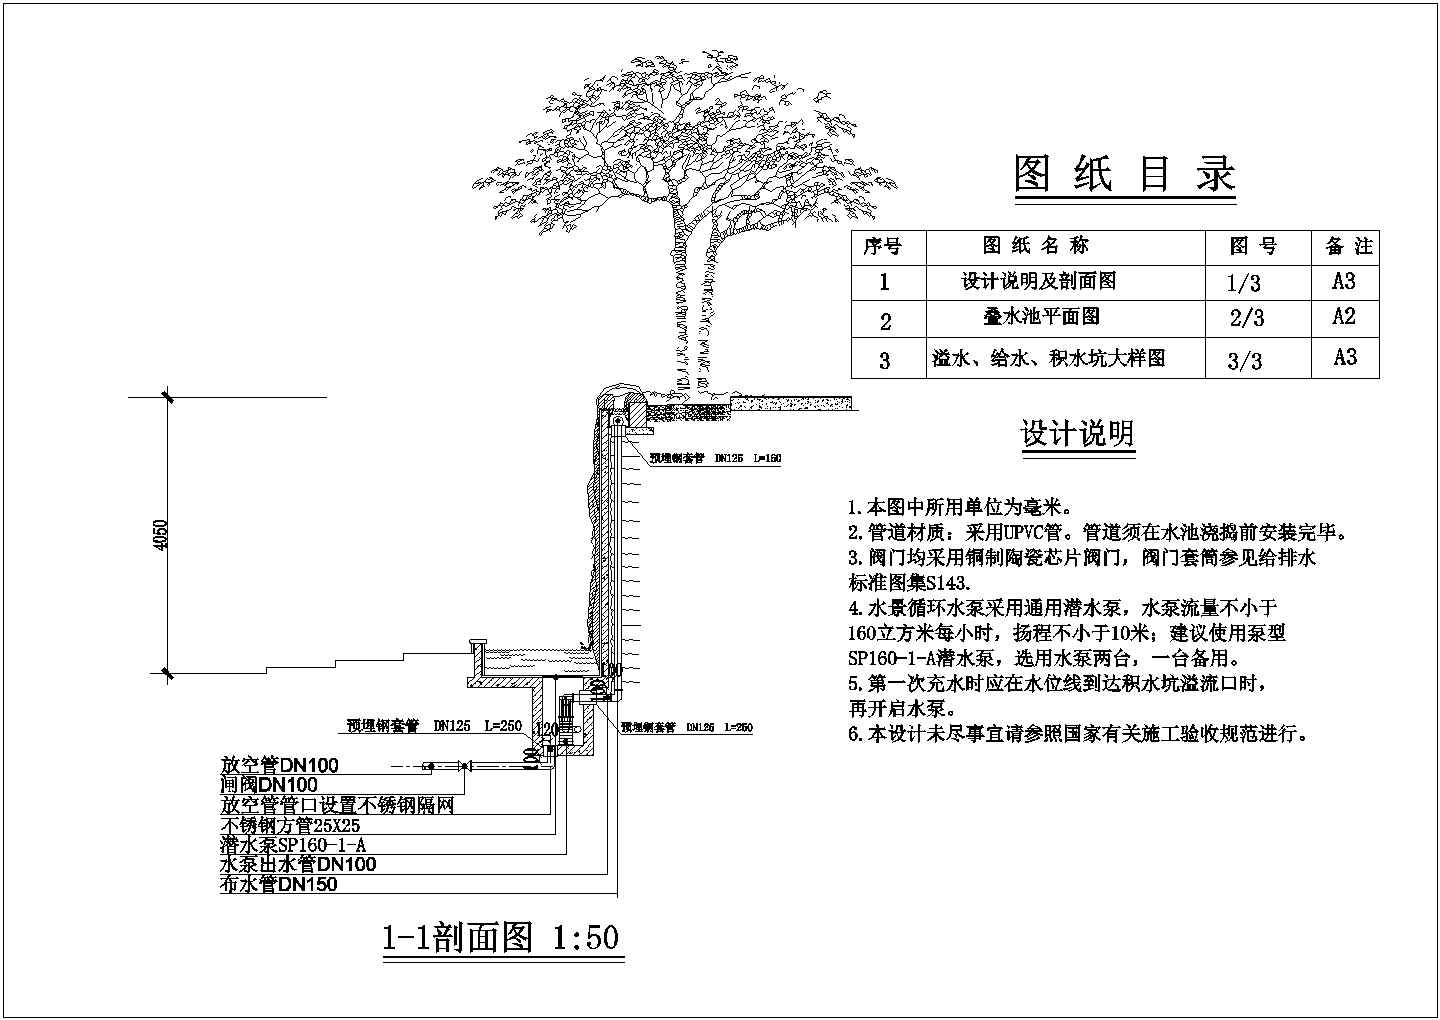 【江苏省】某城市水景工程设计图纸